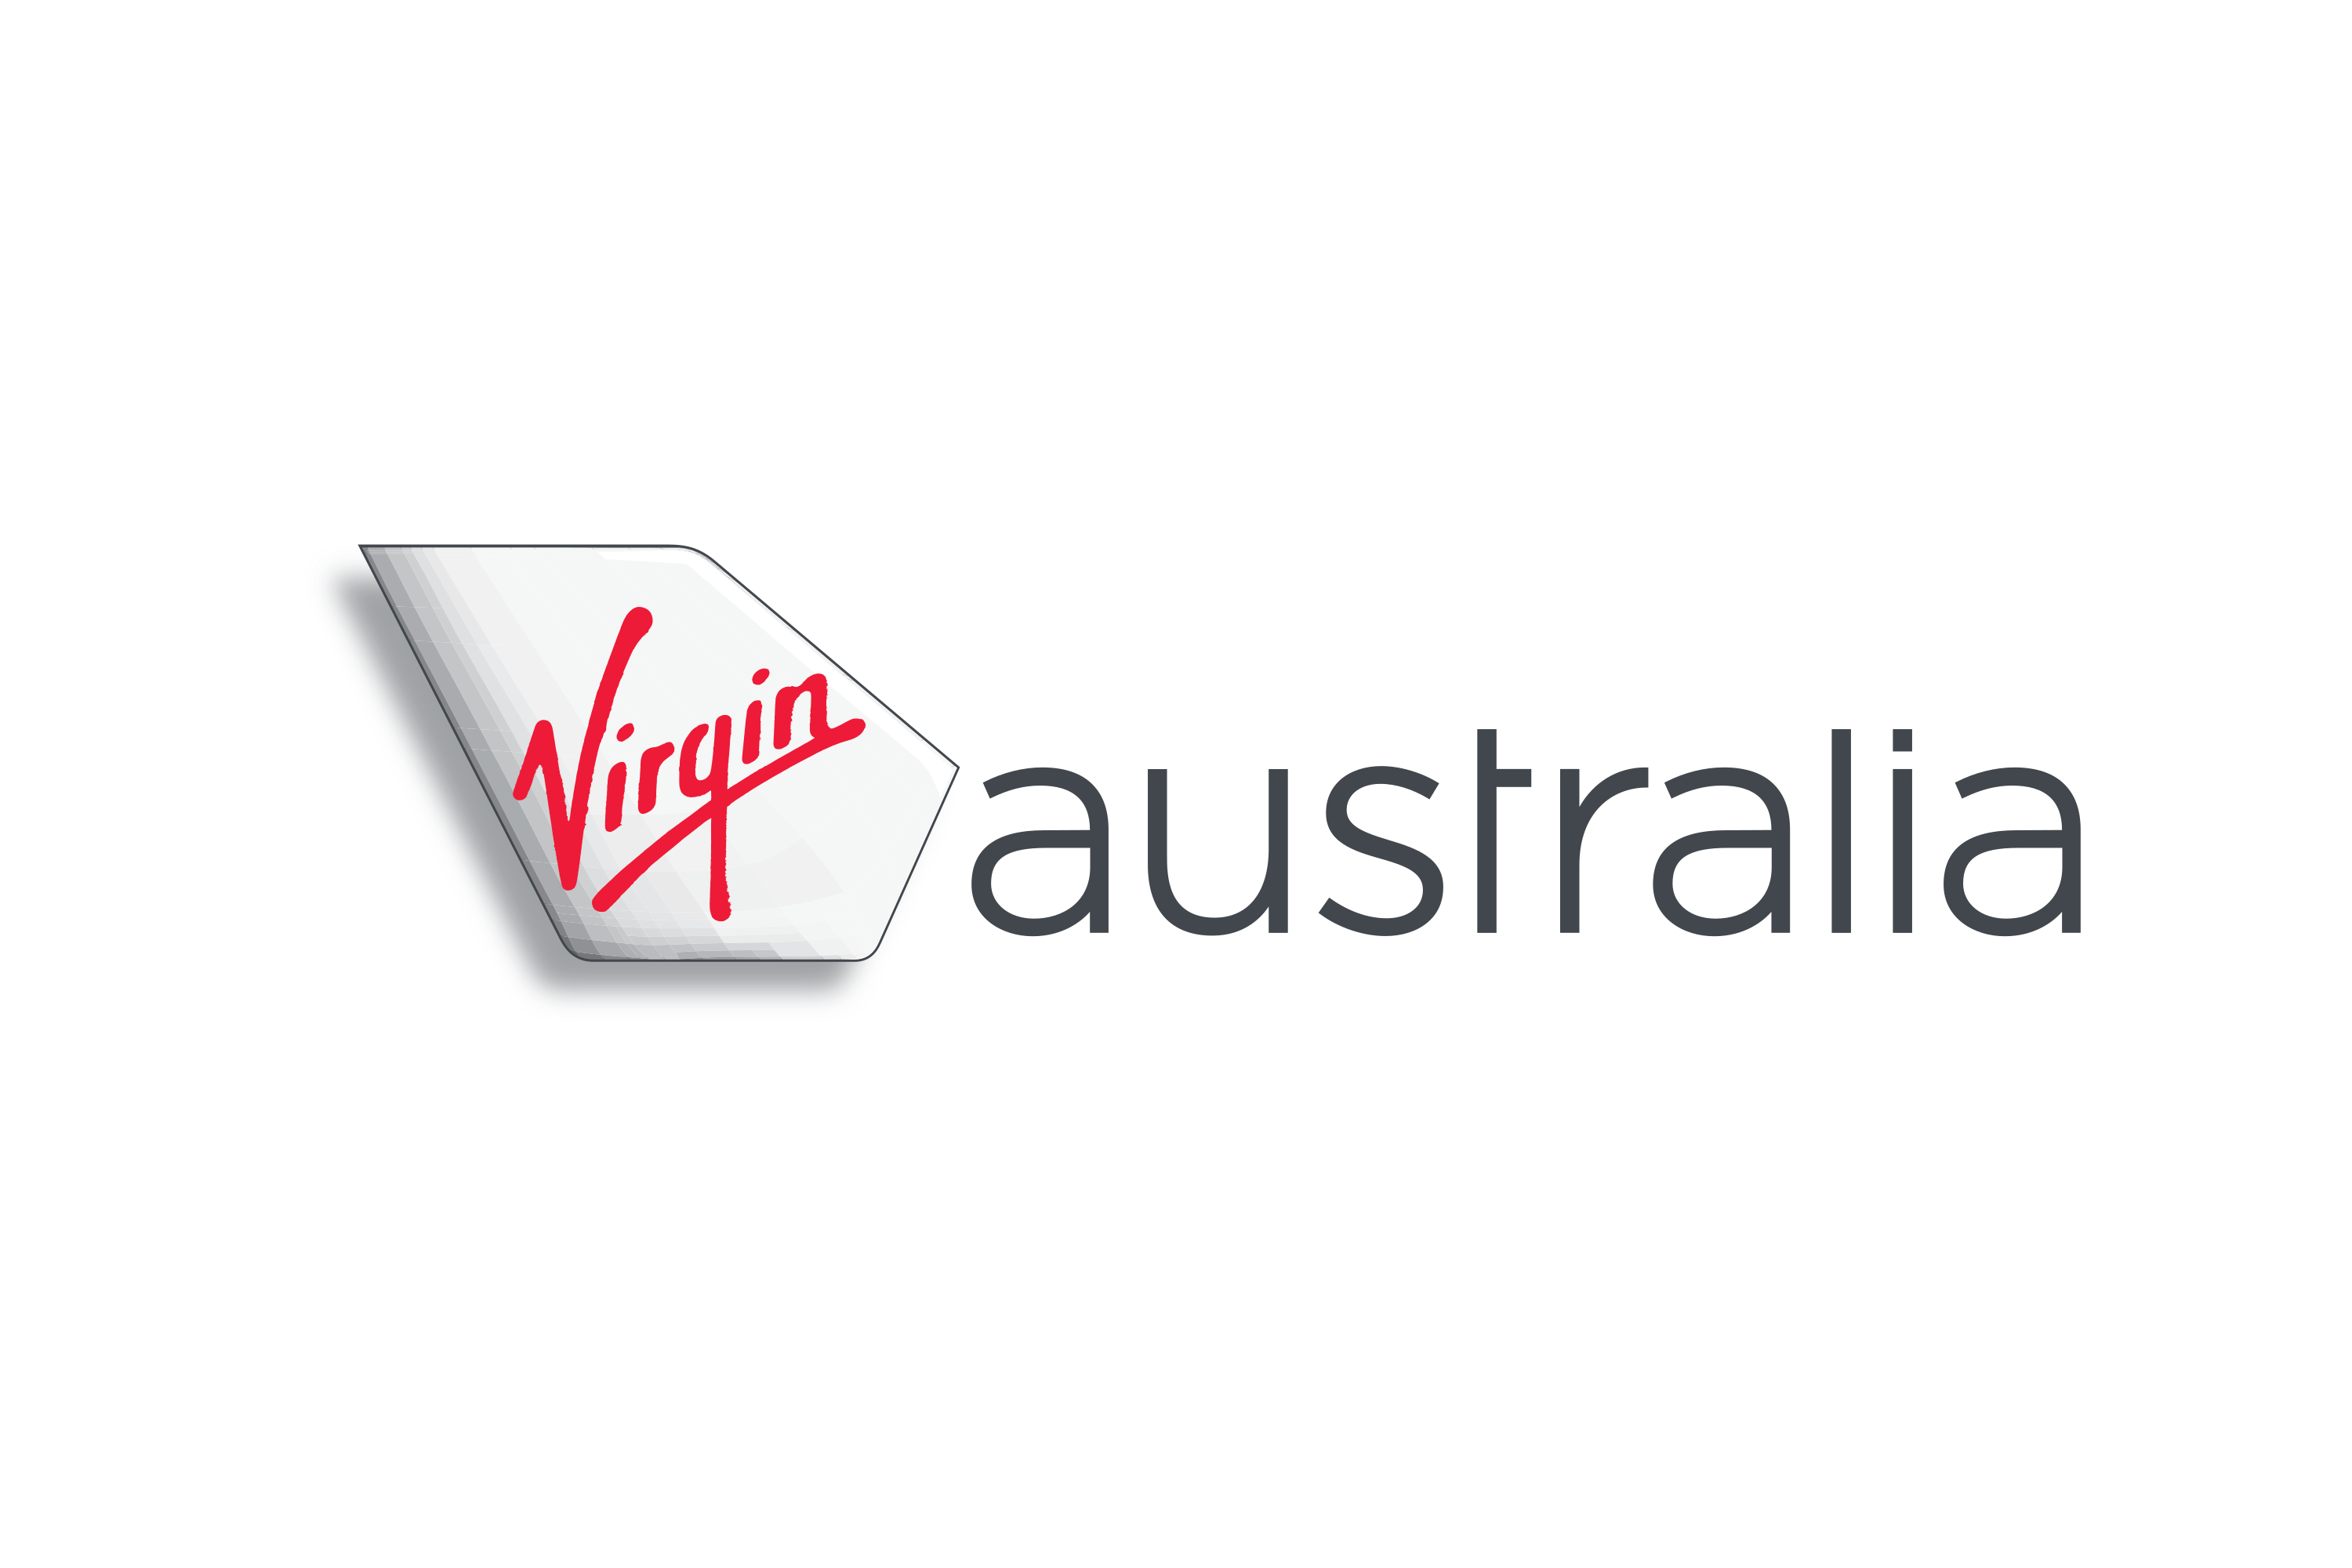 Virgin Australia Sustainability - Sustainable Choice